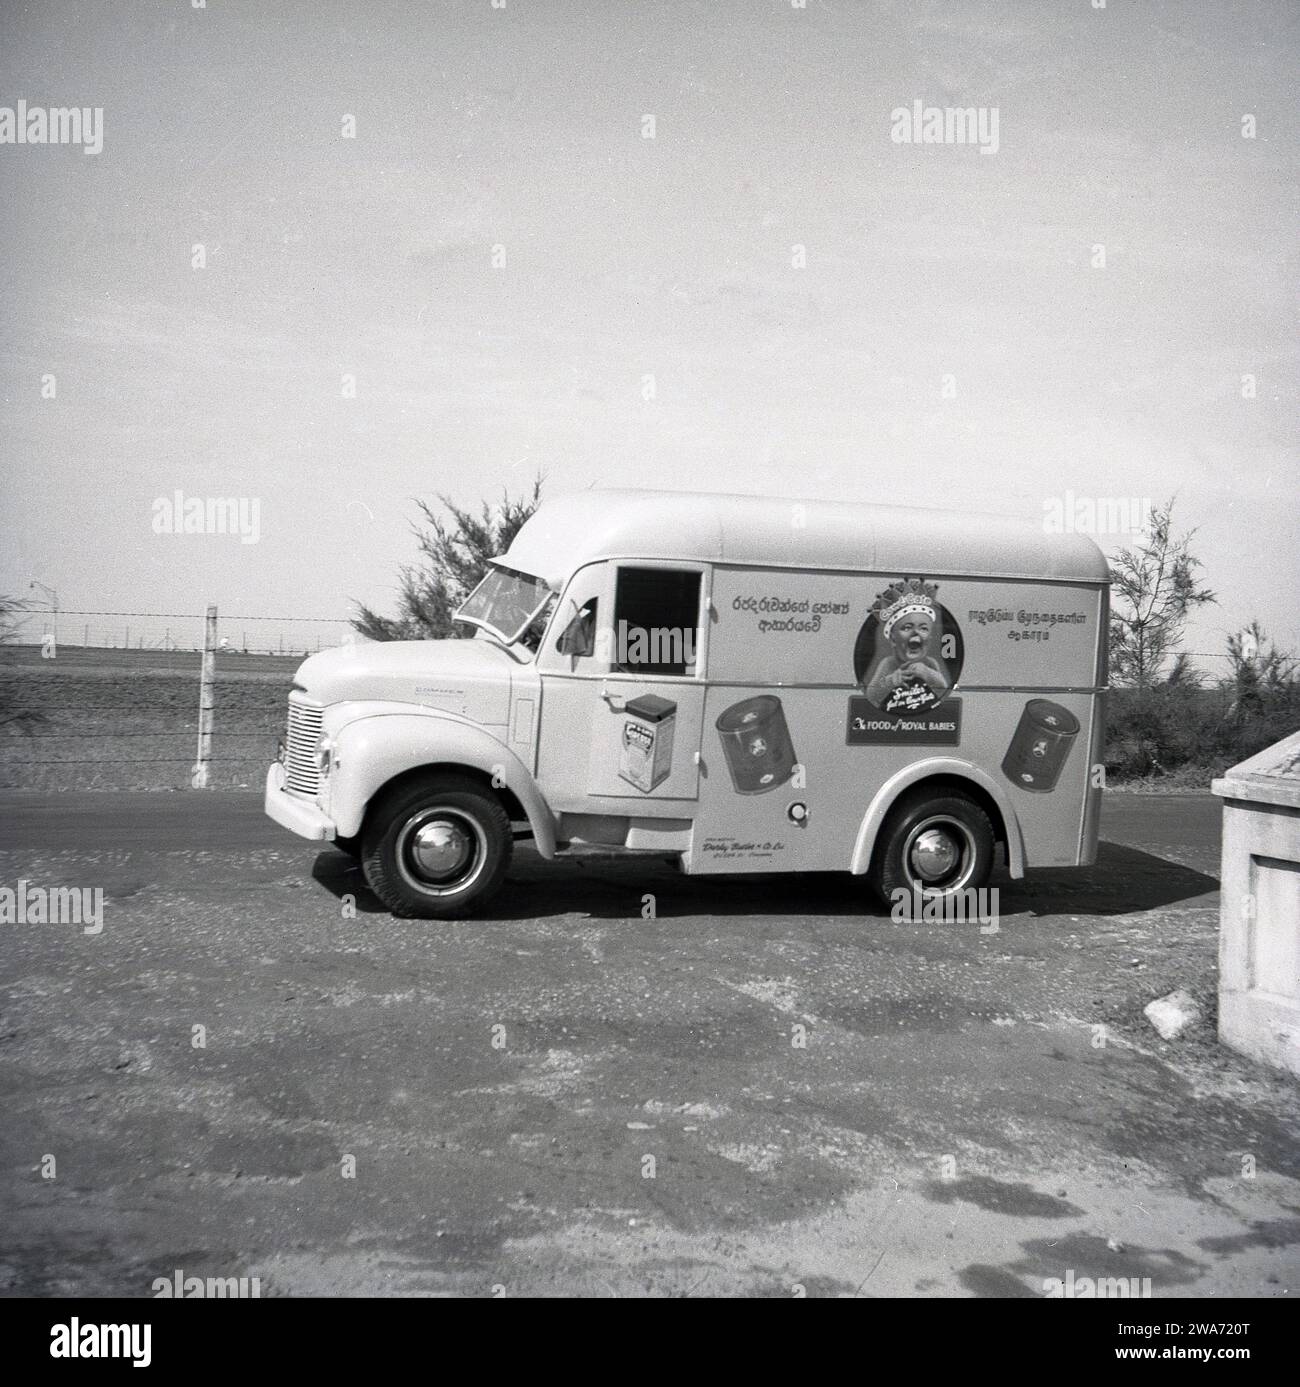 1953, storico, un furgone Commer su una strada a Colombo, Celyon, Asia meridionale. Sul lato del furgone, un bambino sorridente che indossa una corona con lo strapline, "The Food of Royal Babies" e barattoli di mucca e latte alimentare. Agenti unici: Darley Butler & Co Ltd, Queen St, Colombo. The Cow & Gate 'smiler', un bambino felice e dall'aspetto sano, è apparso per la prima volta sulle confezioni e sugli annunci pubblicitari dei prodotti negli anni '1930 Il "bambino reale; con una corona sulla testa risale al 1937 e l'incoronazione di Briitsh re Giorgio vi, quando la compagnia di diari inglese iniziò a usare la "Royal Association" per sostenere la loro formula di latte per bambini. Foto Stock